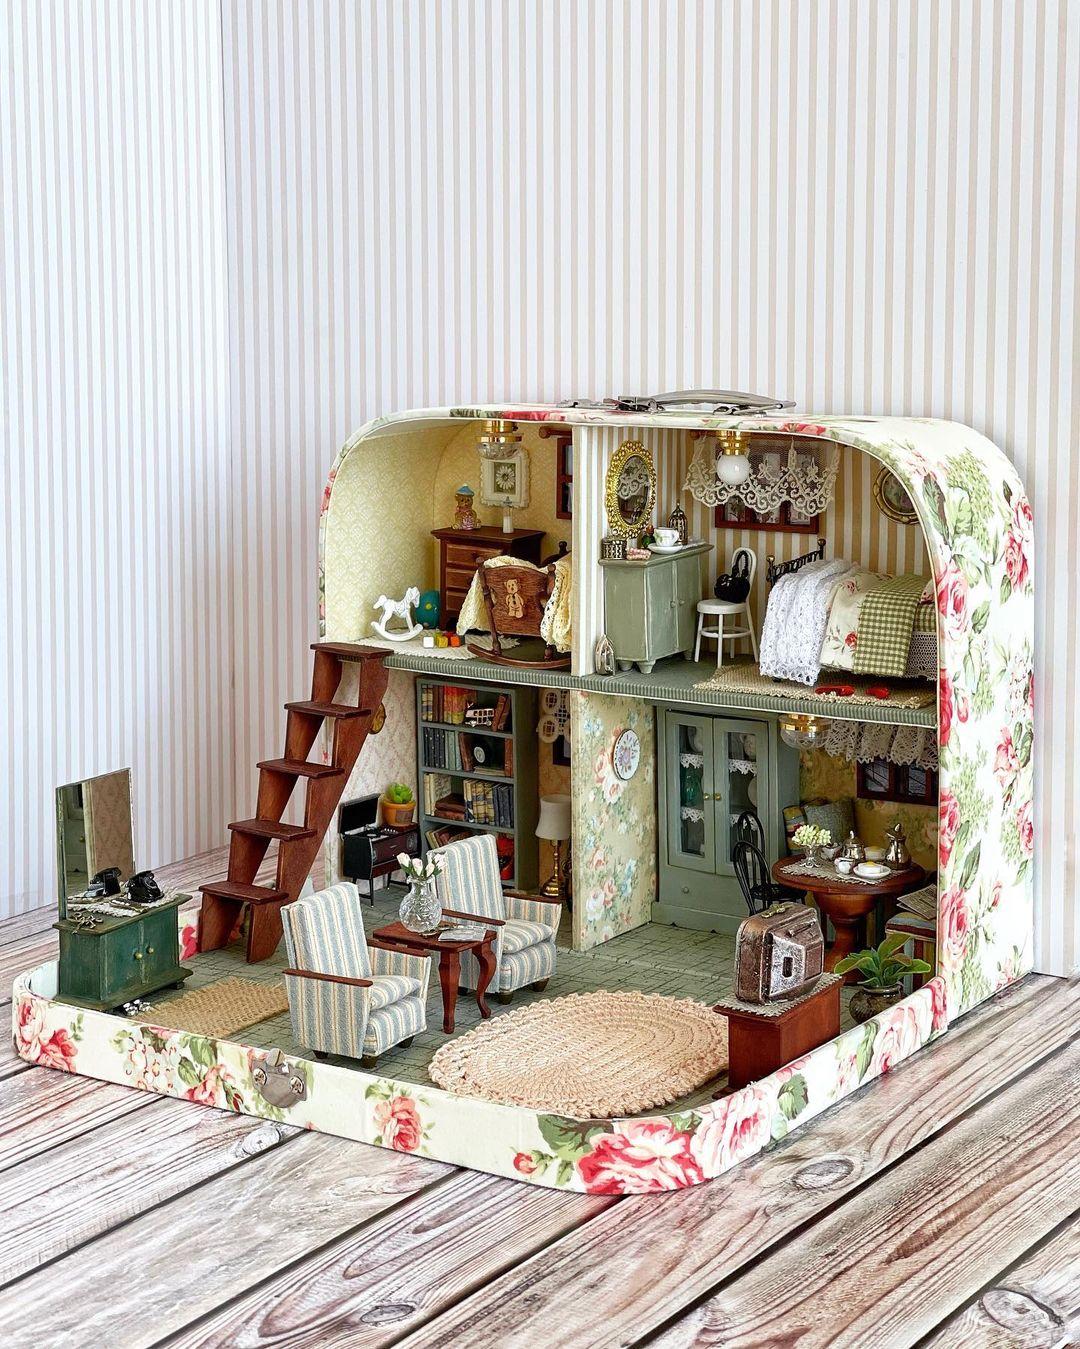 "Two-story Cottage." (Courtesy of <a href="https://www.instagram.com/olgamokriskaya/">Olga Mokriskaya</a>)